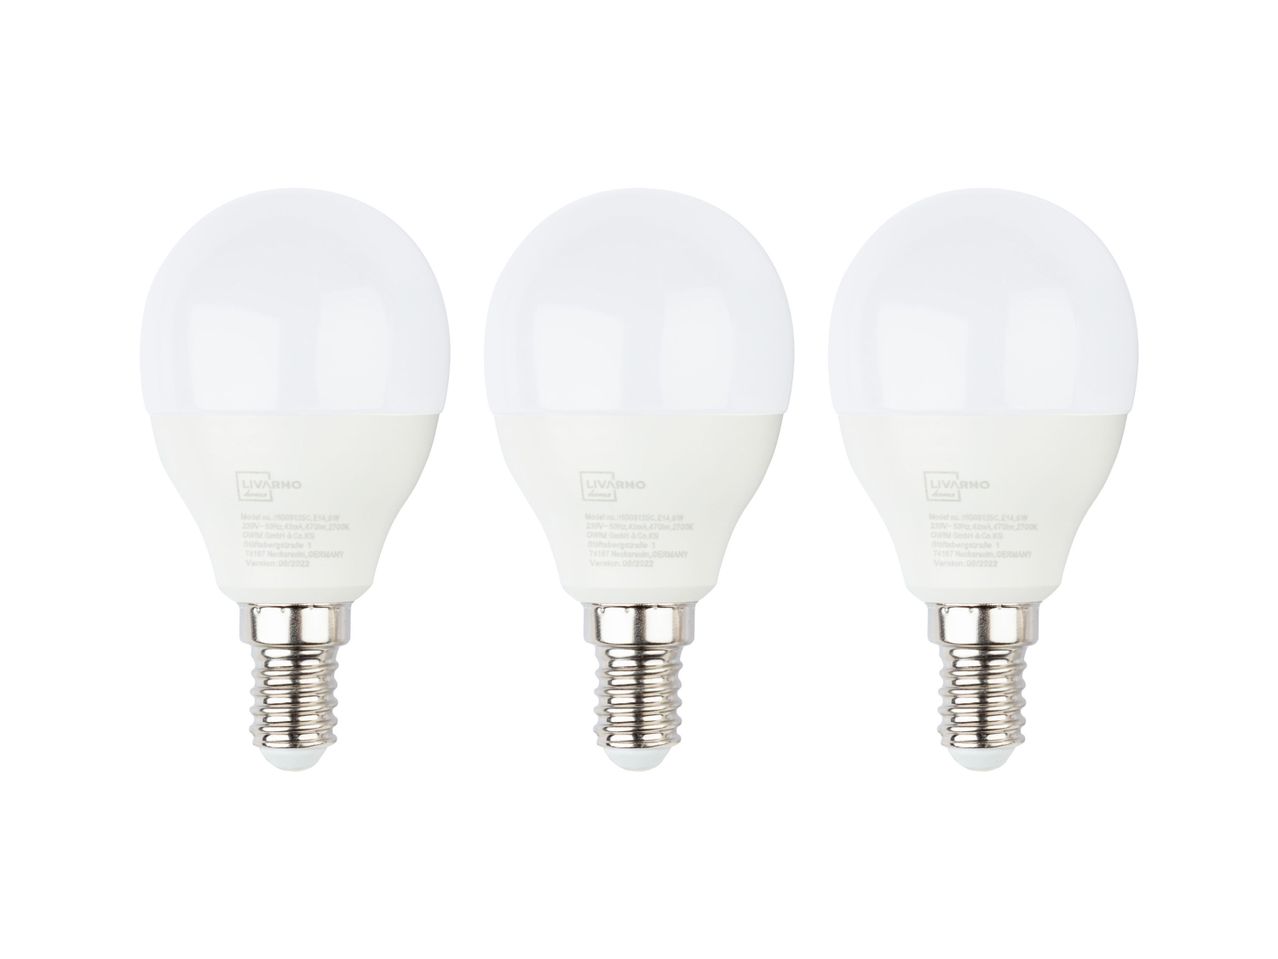 Lampadina LED , prezzo 3.49 EUR 
Lampadina LED 2 o 3 pezzi 
- 2700 K
- Bianco caldo
A ...